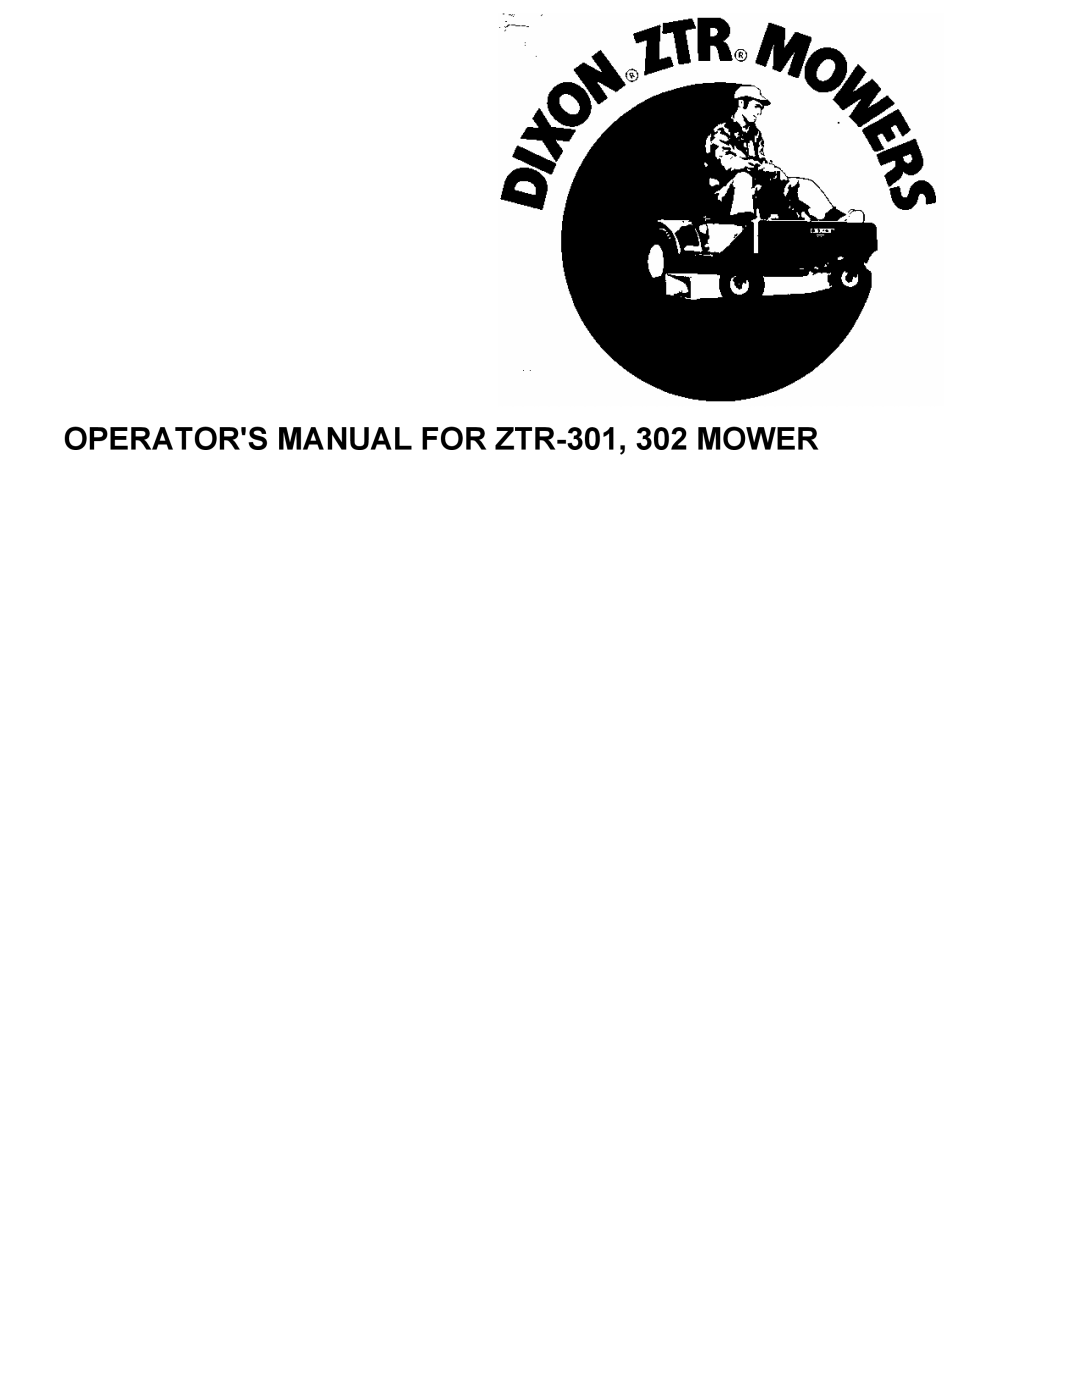 Dixon 301, 302 manual OPERATORS MANUAL FOR ZTR-301,302 MOWER 